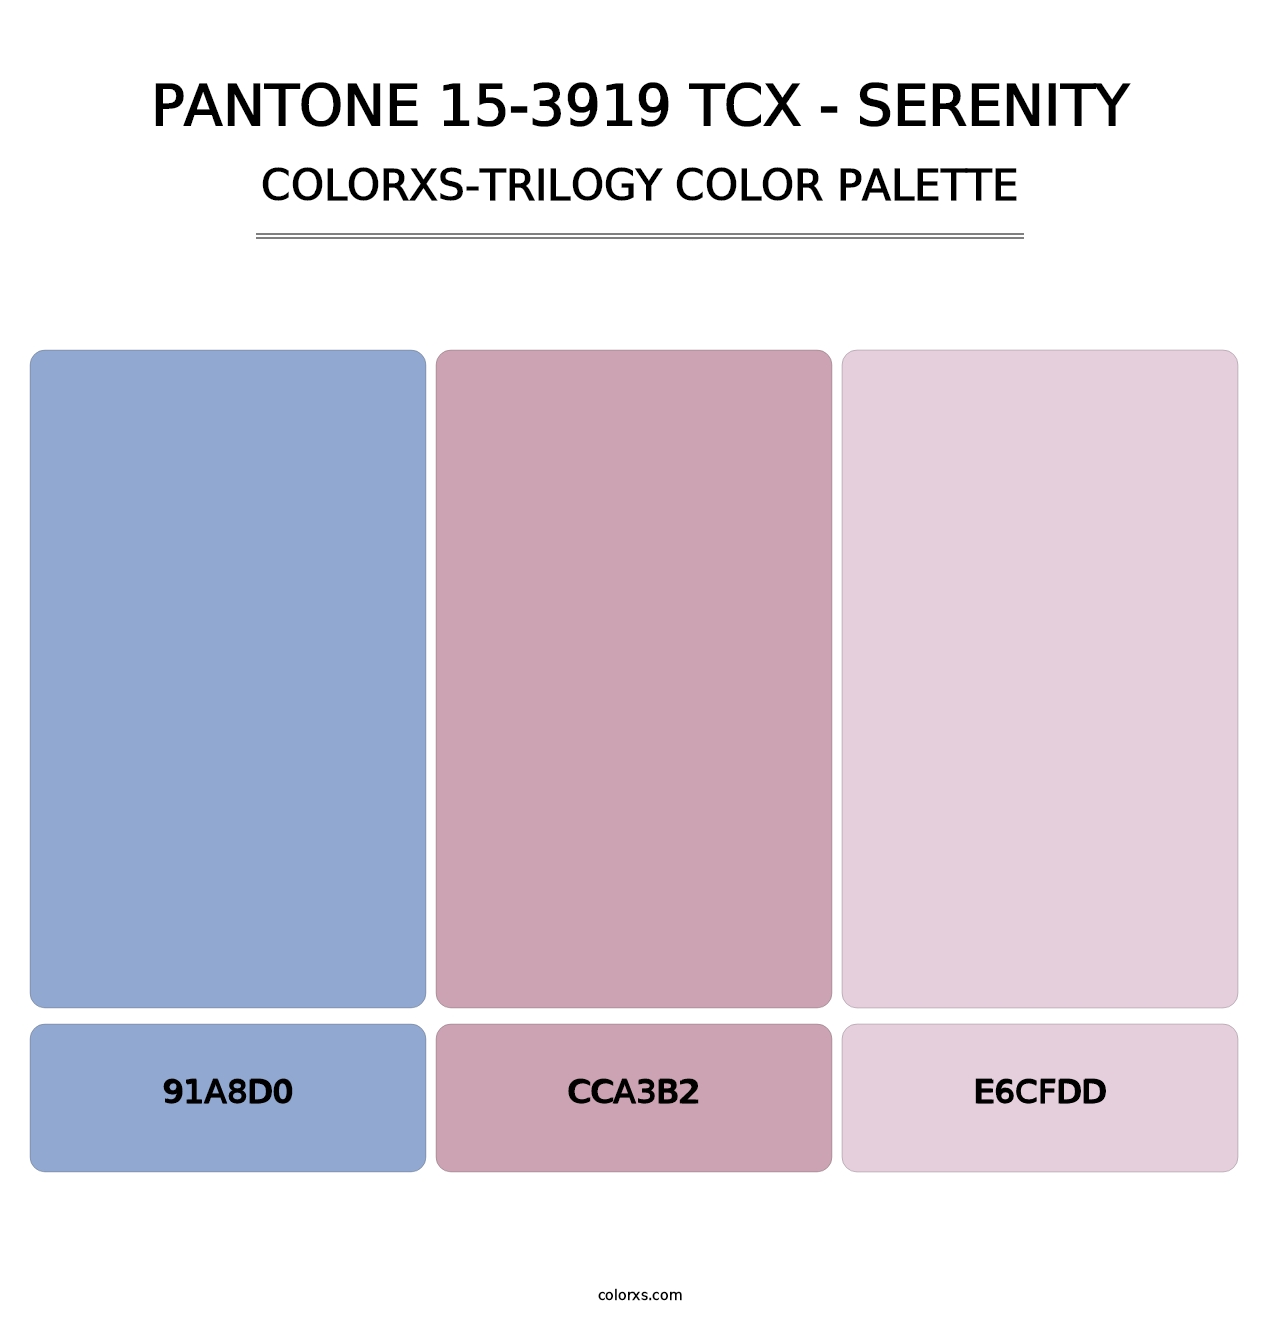 PANTONE 15-3919 TCX - Serenity - Colorxs Trilogy Palette